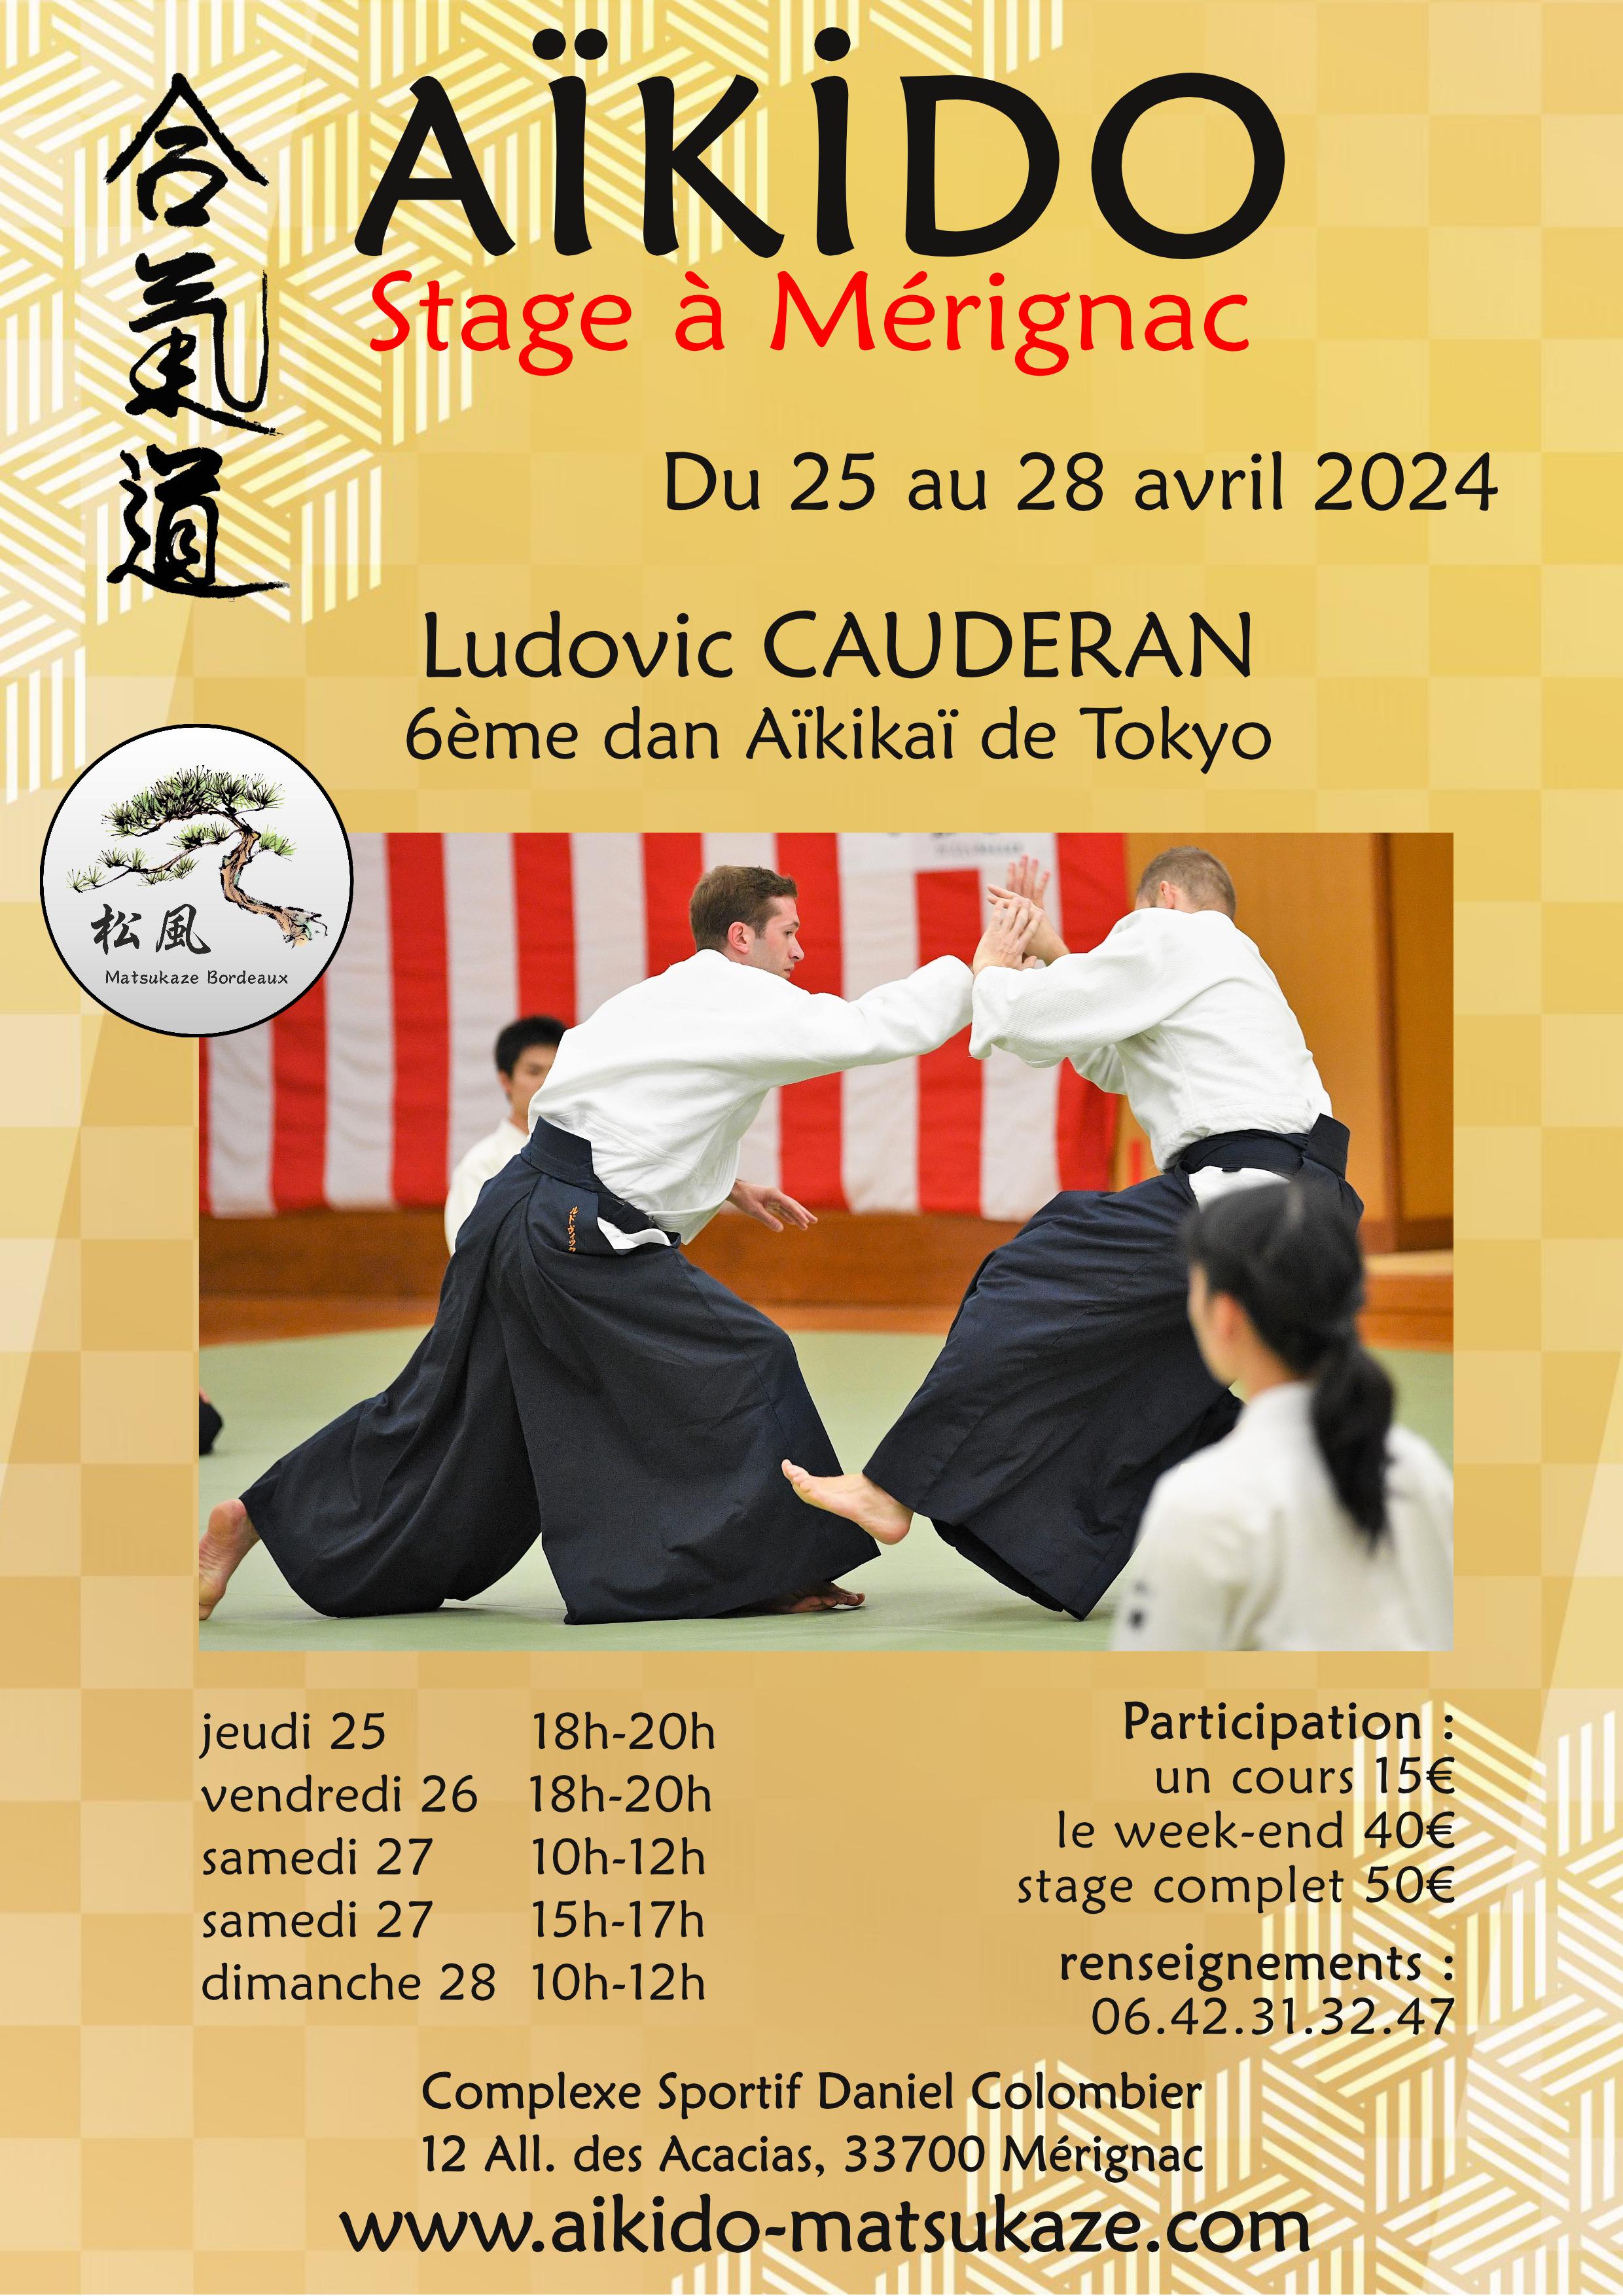 Affiche du Stage d'Aïkido à Mérignac animé par Ludovic Cauderan du jeudi 25 avril 2024 au dimanche 28 avril 2024